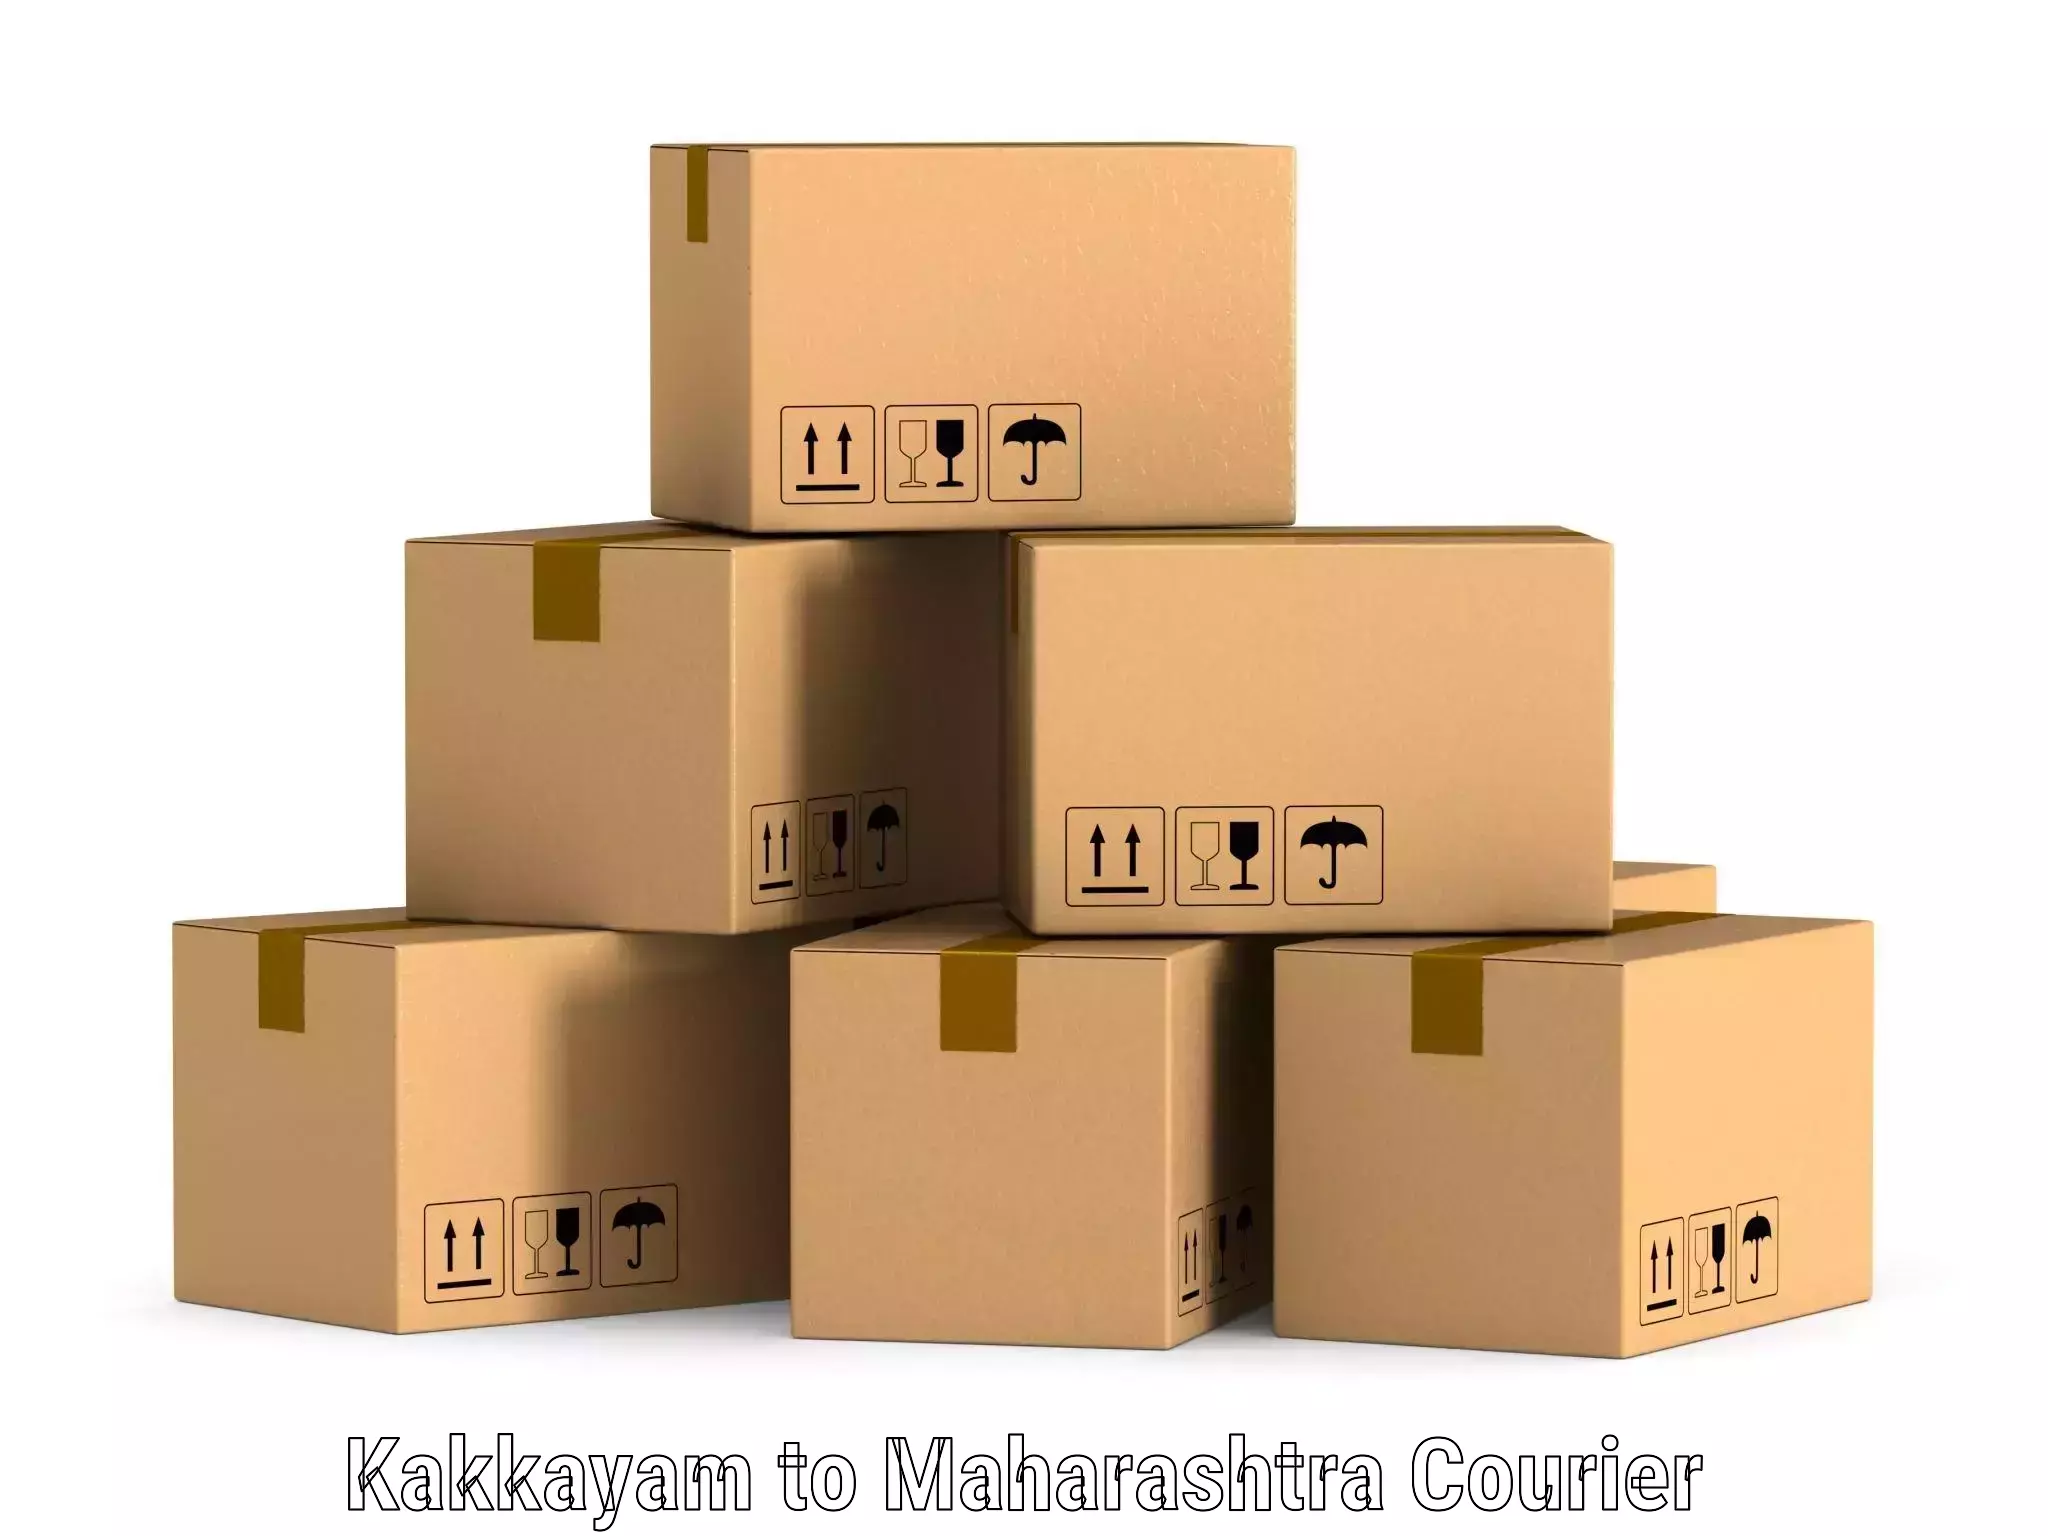 Seamless shipping experience Kakkayam to Maharashtra